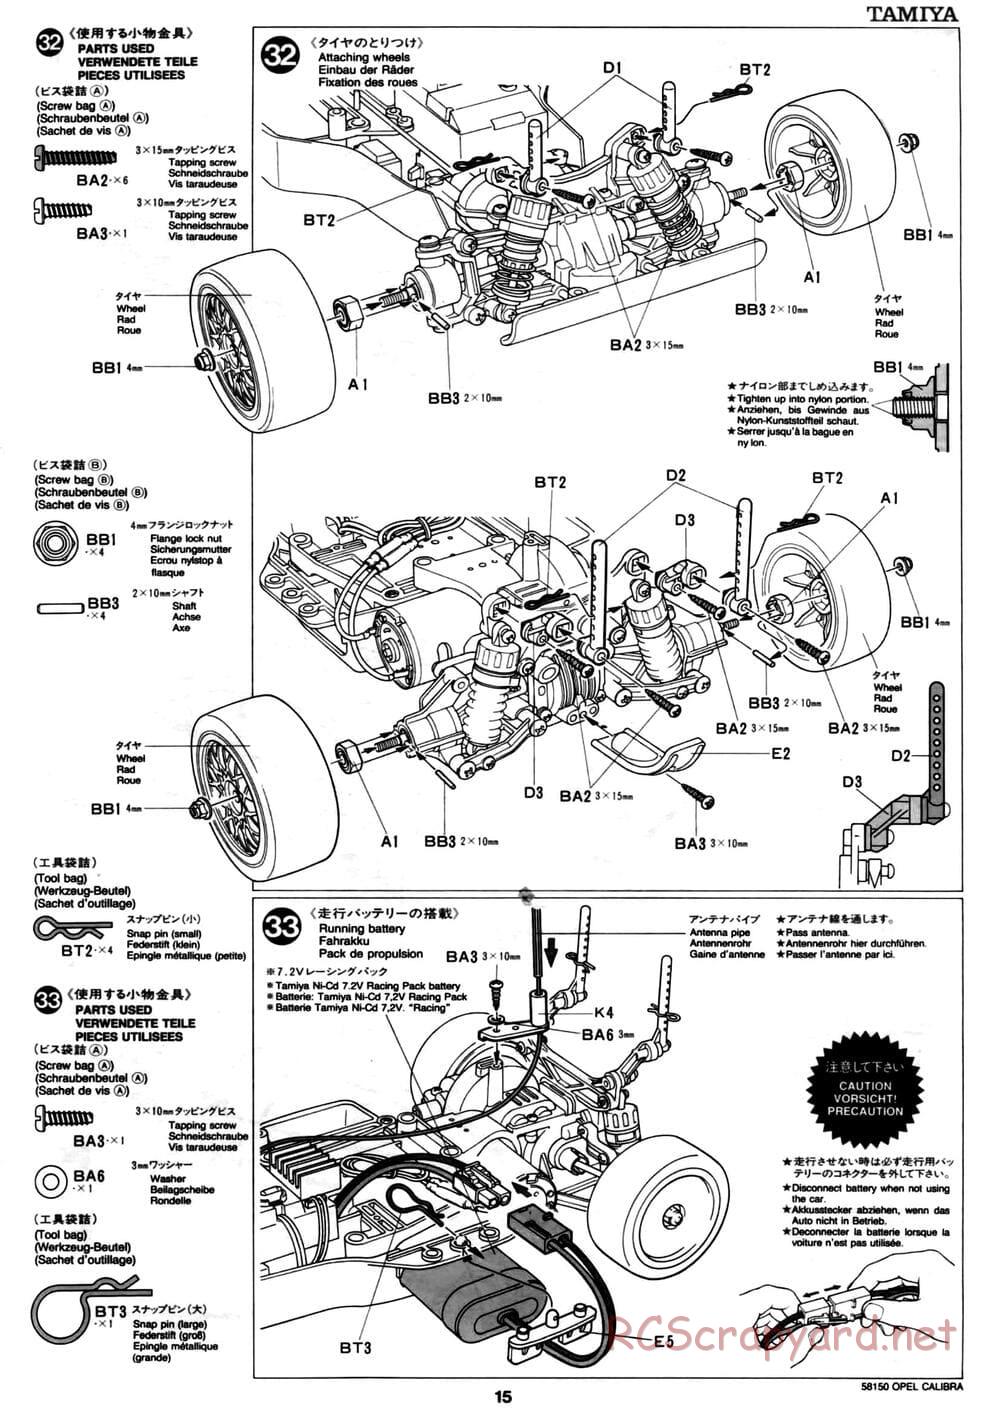 Tamiya - Opel Calibra V6 DTM - TA-02 Chassis - Manual - Page 15